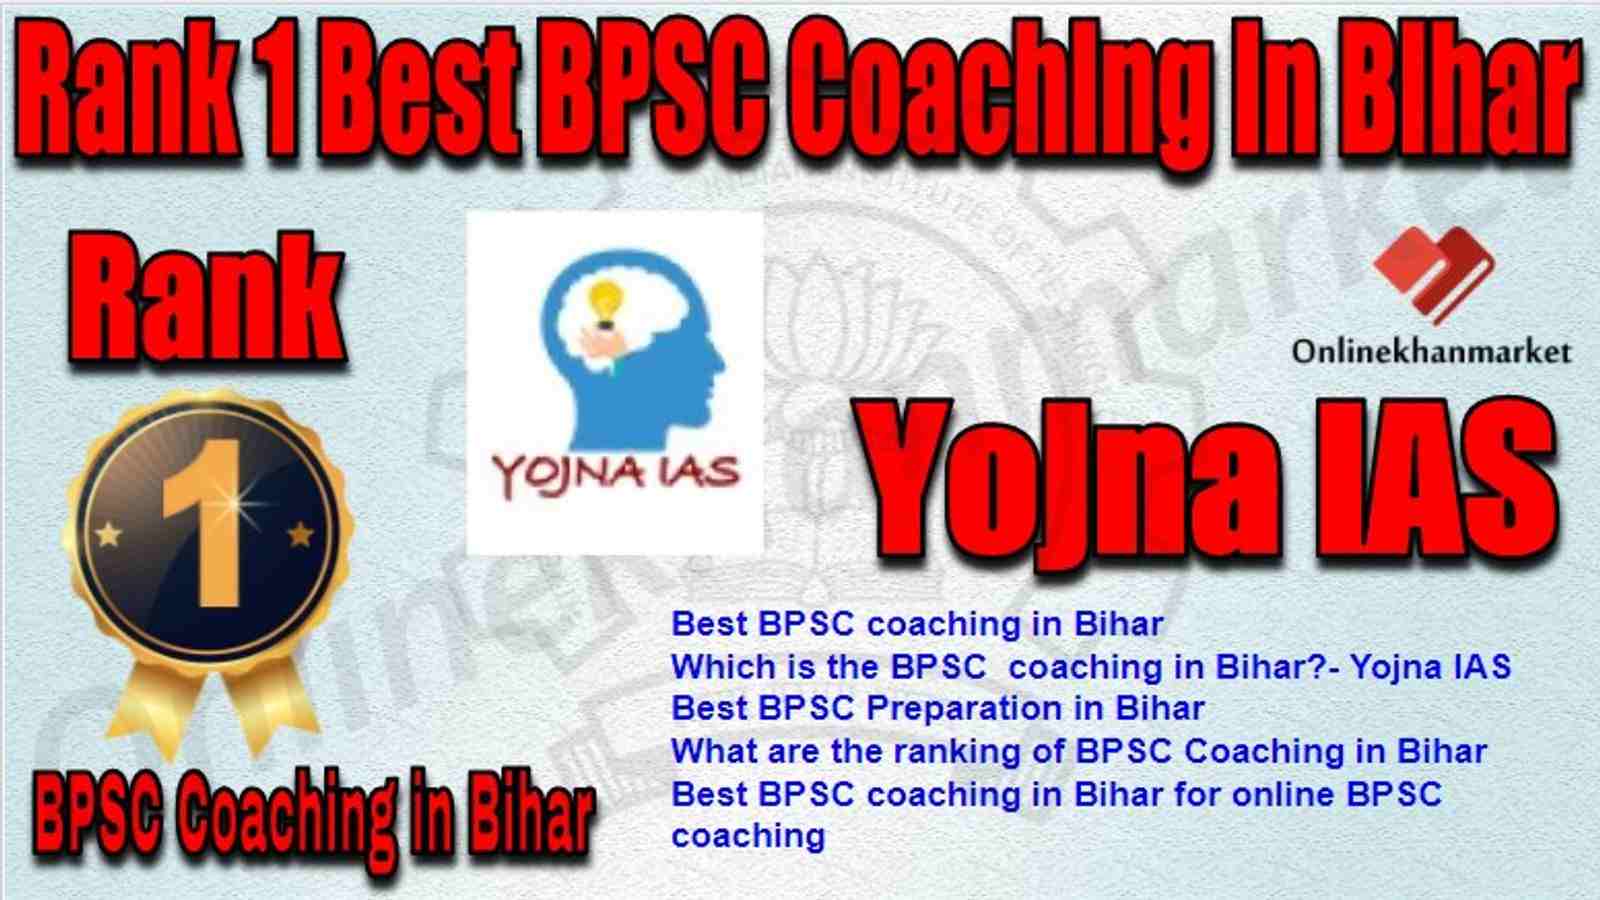 Rank 1 Best BPSC Coaching in bihar